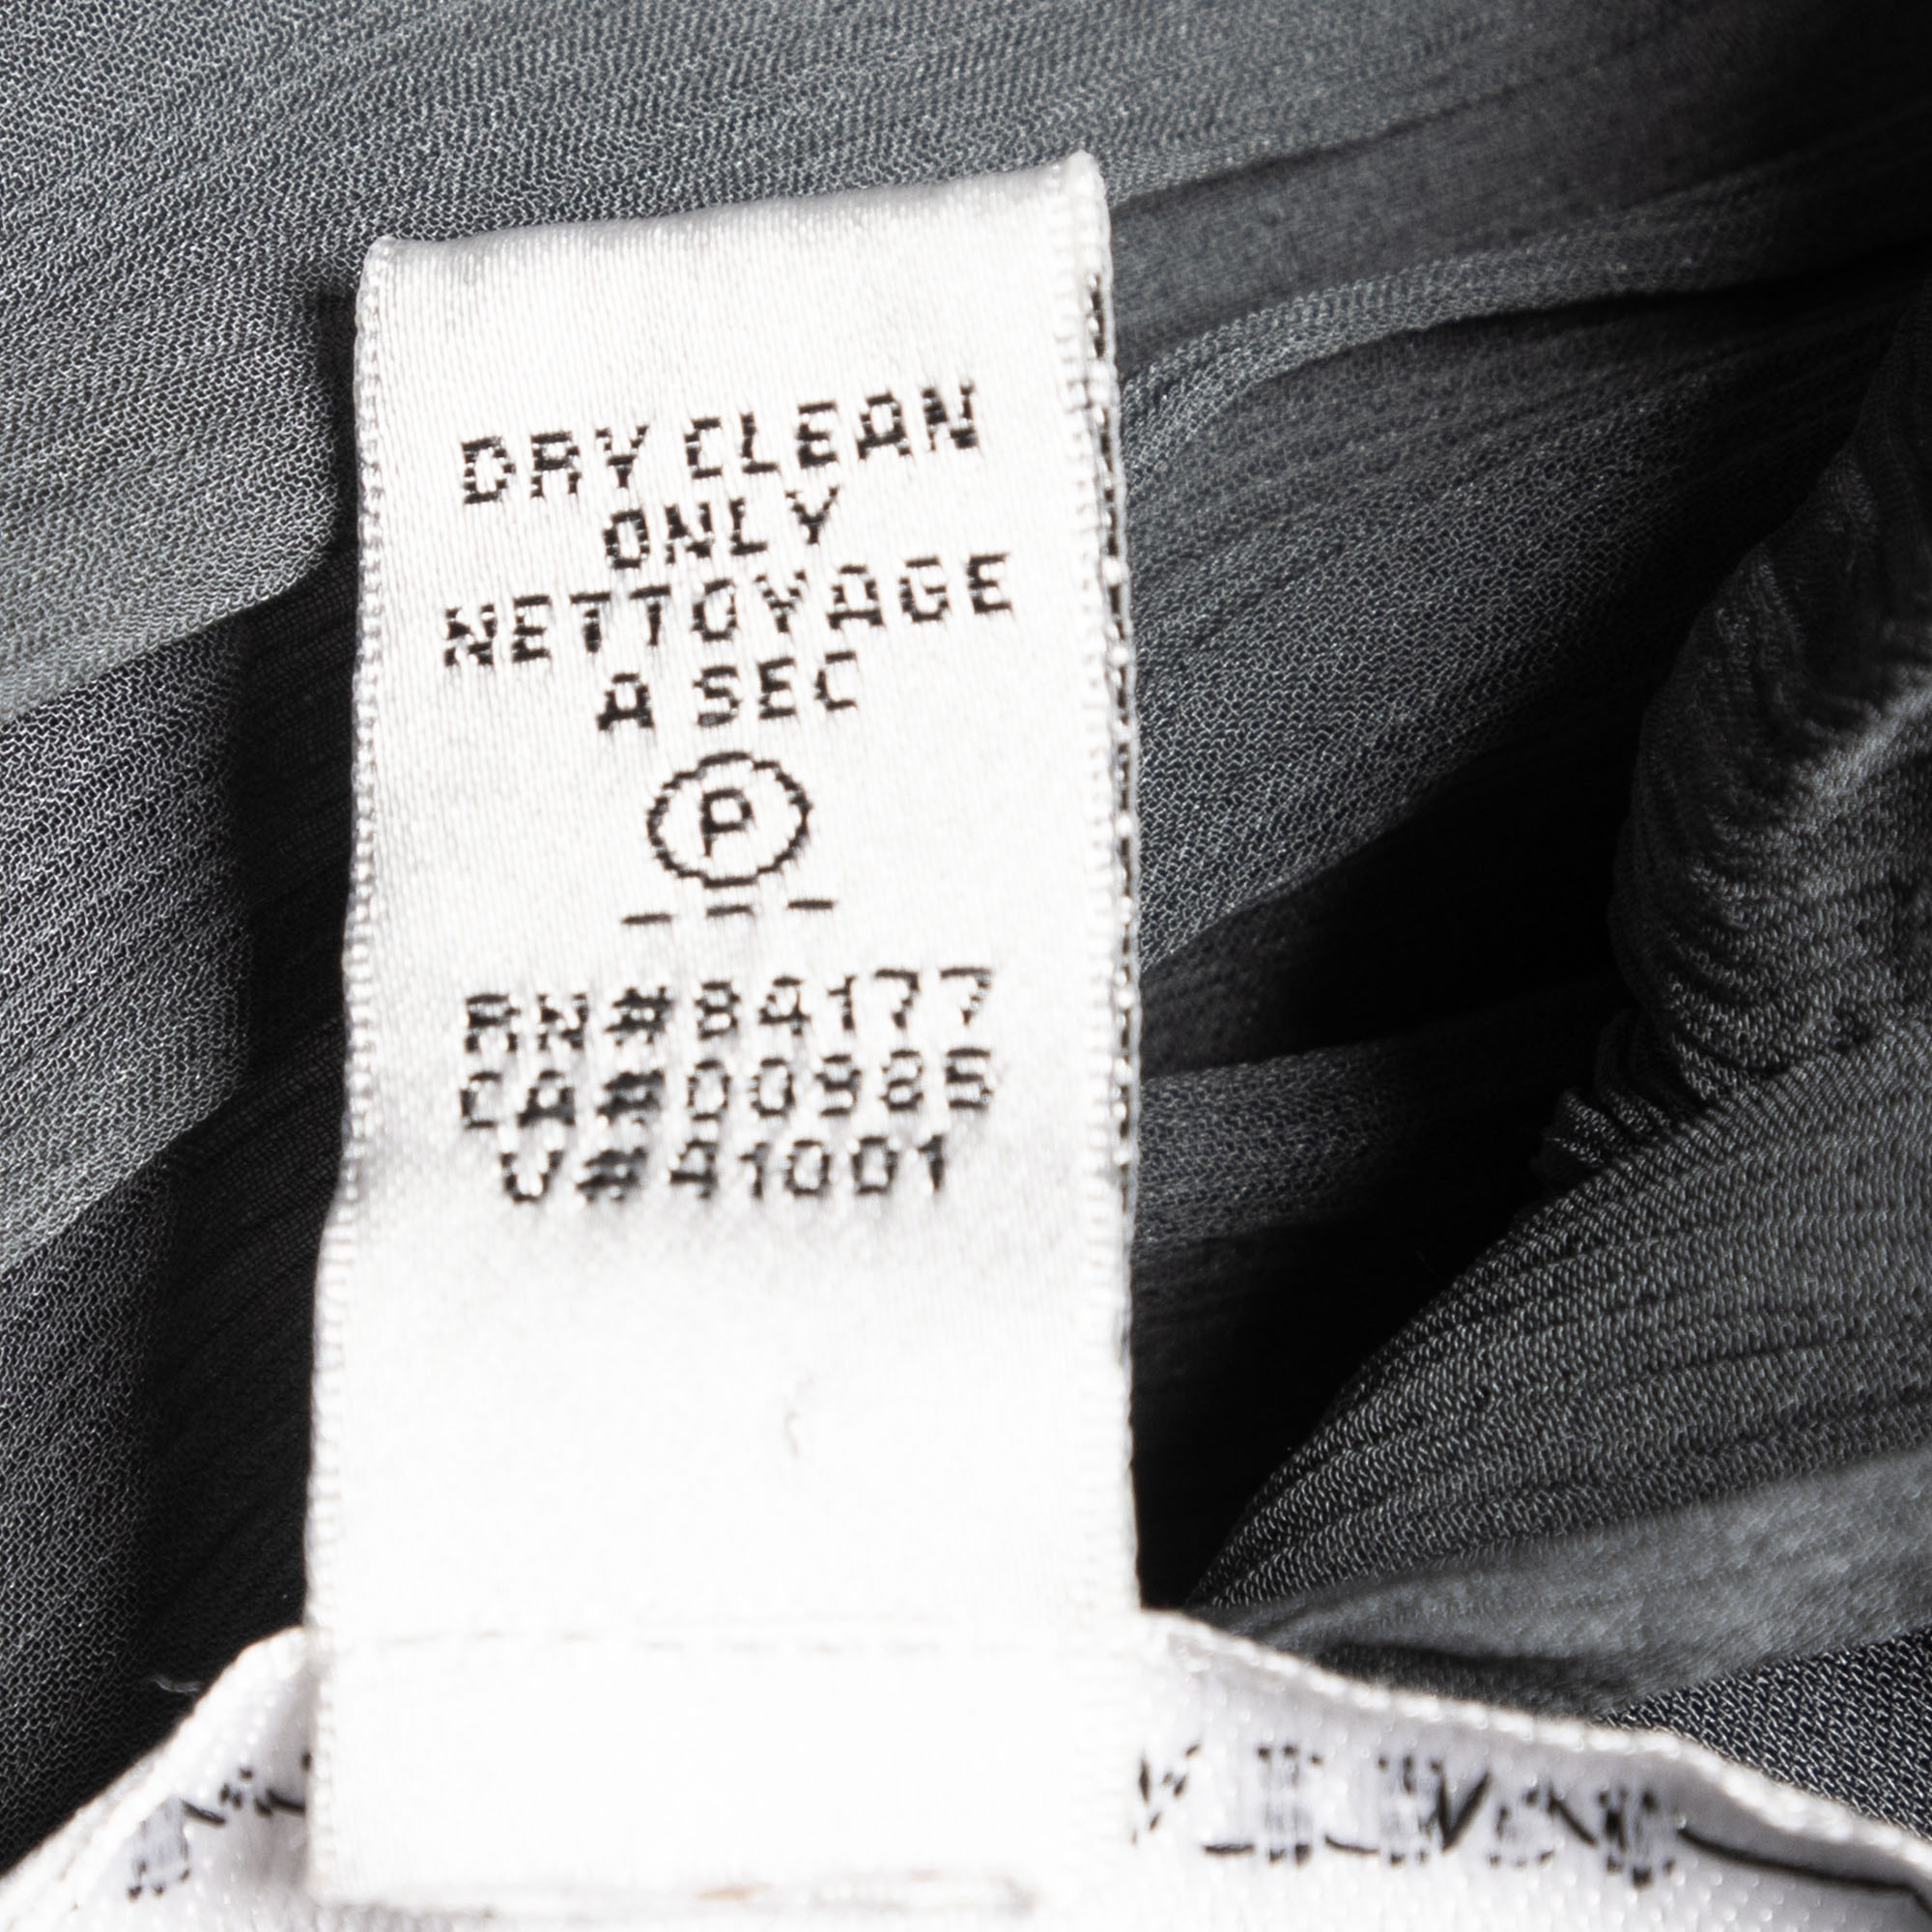 Diane Von Furstenberg Charcoal Grey Silk Chiffon Tull Midi Dress L